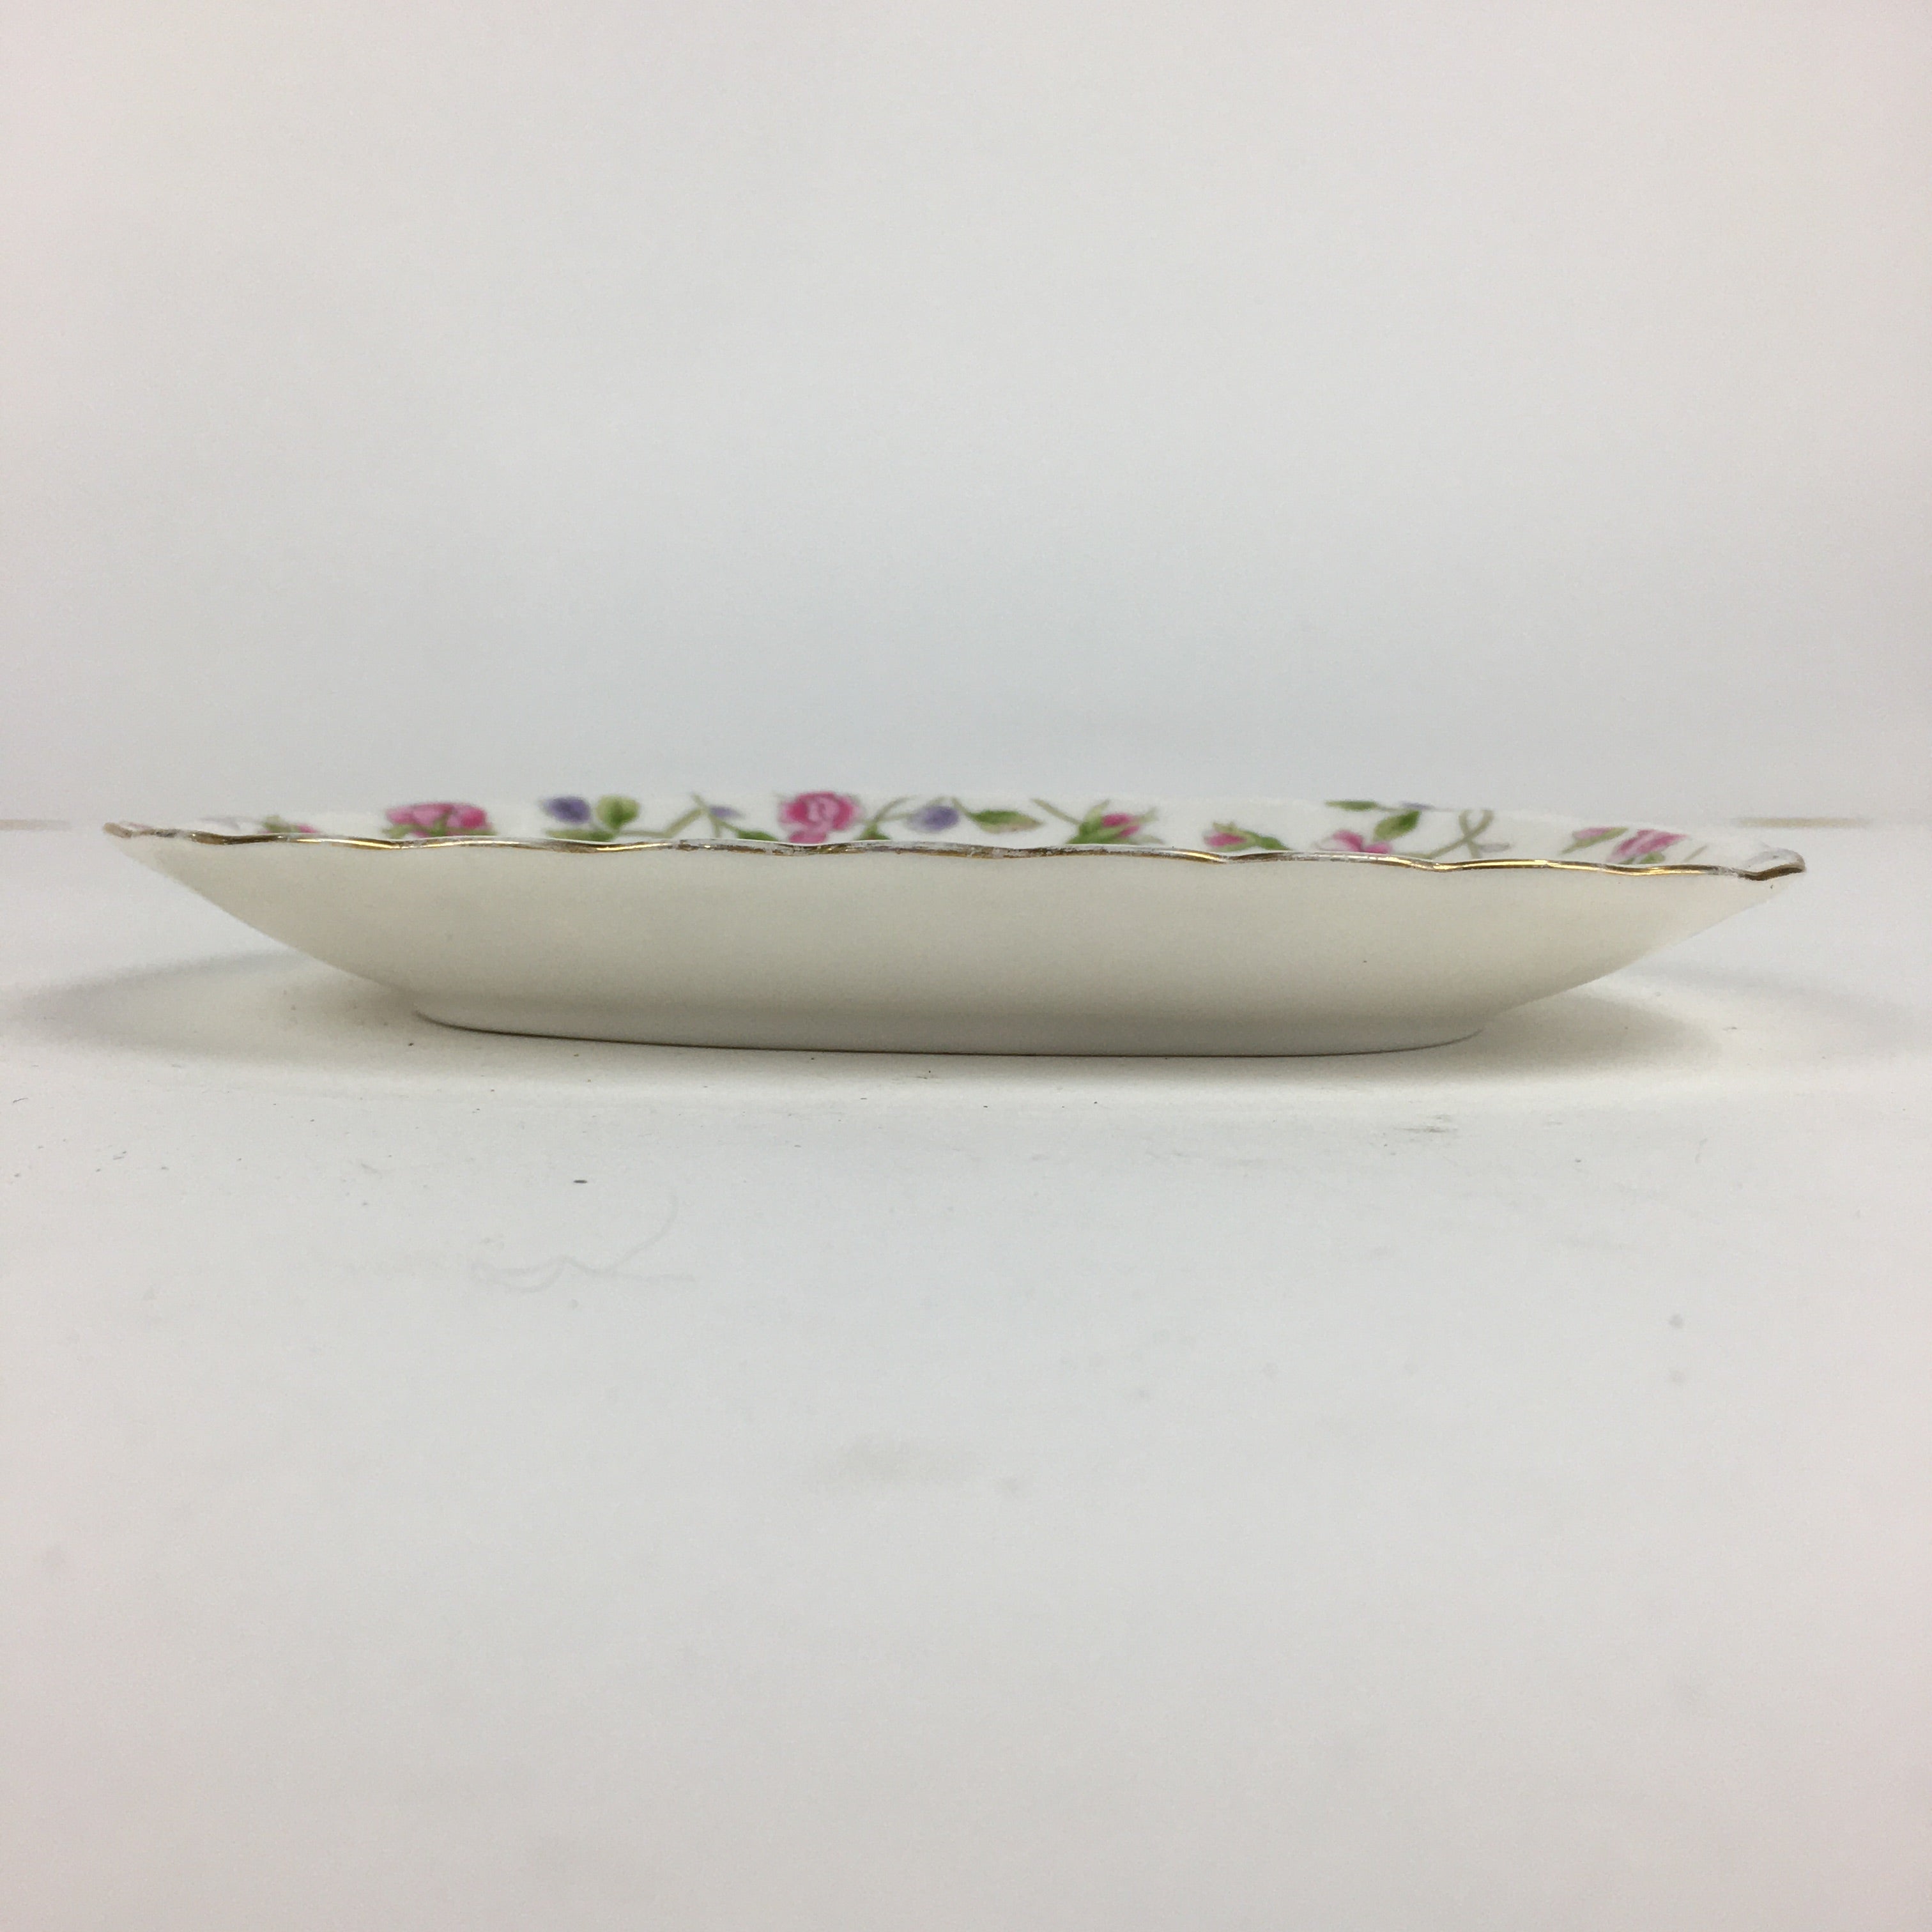 Japanese Porcelain Small Plate Hoya China Corp. Vtg Flower Pattern PP791